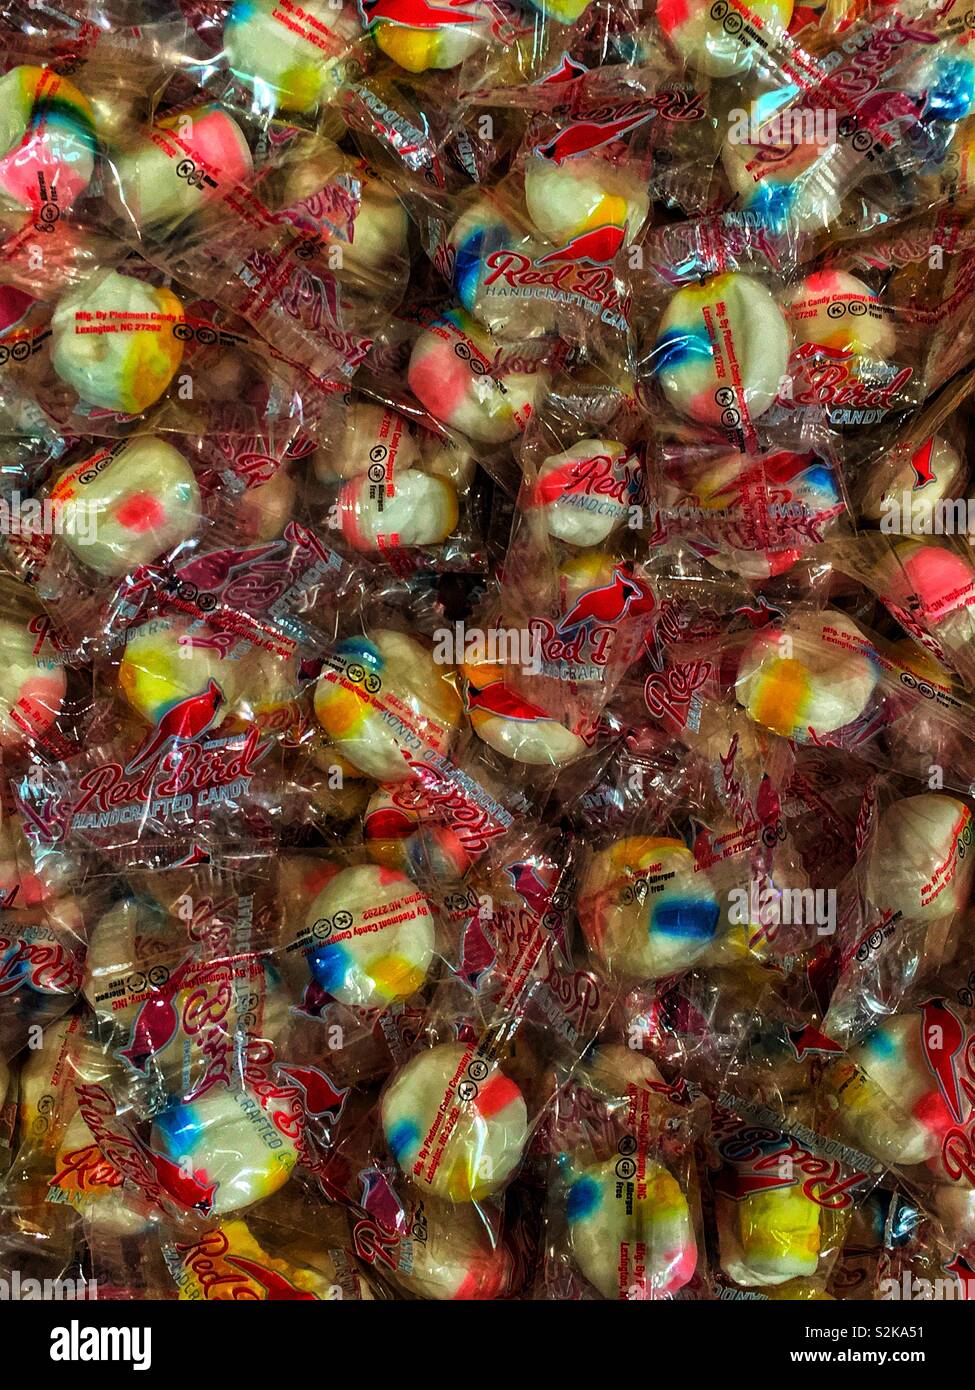 Fotograma completo de Pájaro Rojo solo envuelto caramelos se amontona en una bandeja para la venta. Foto de stock